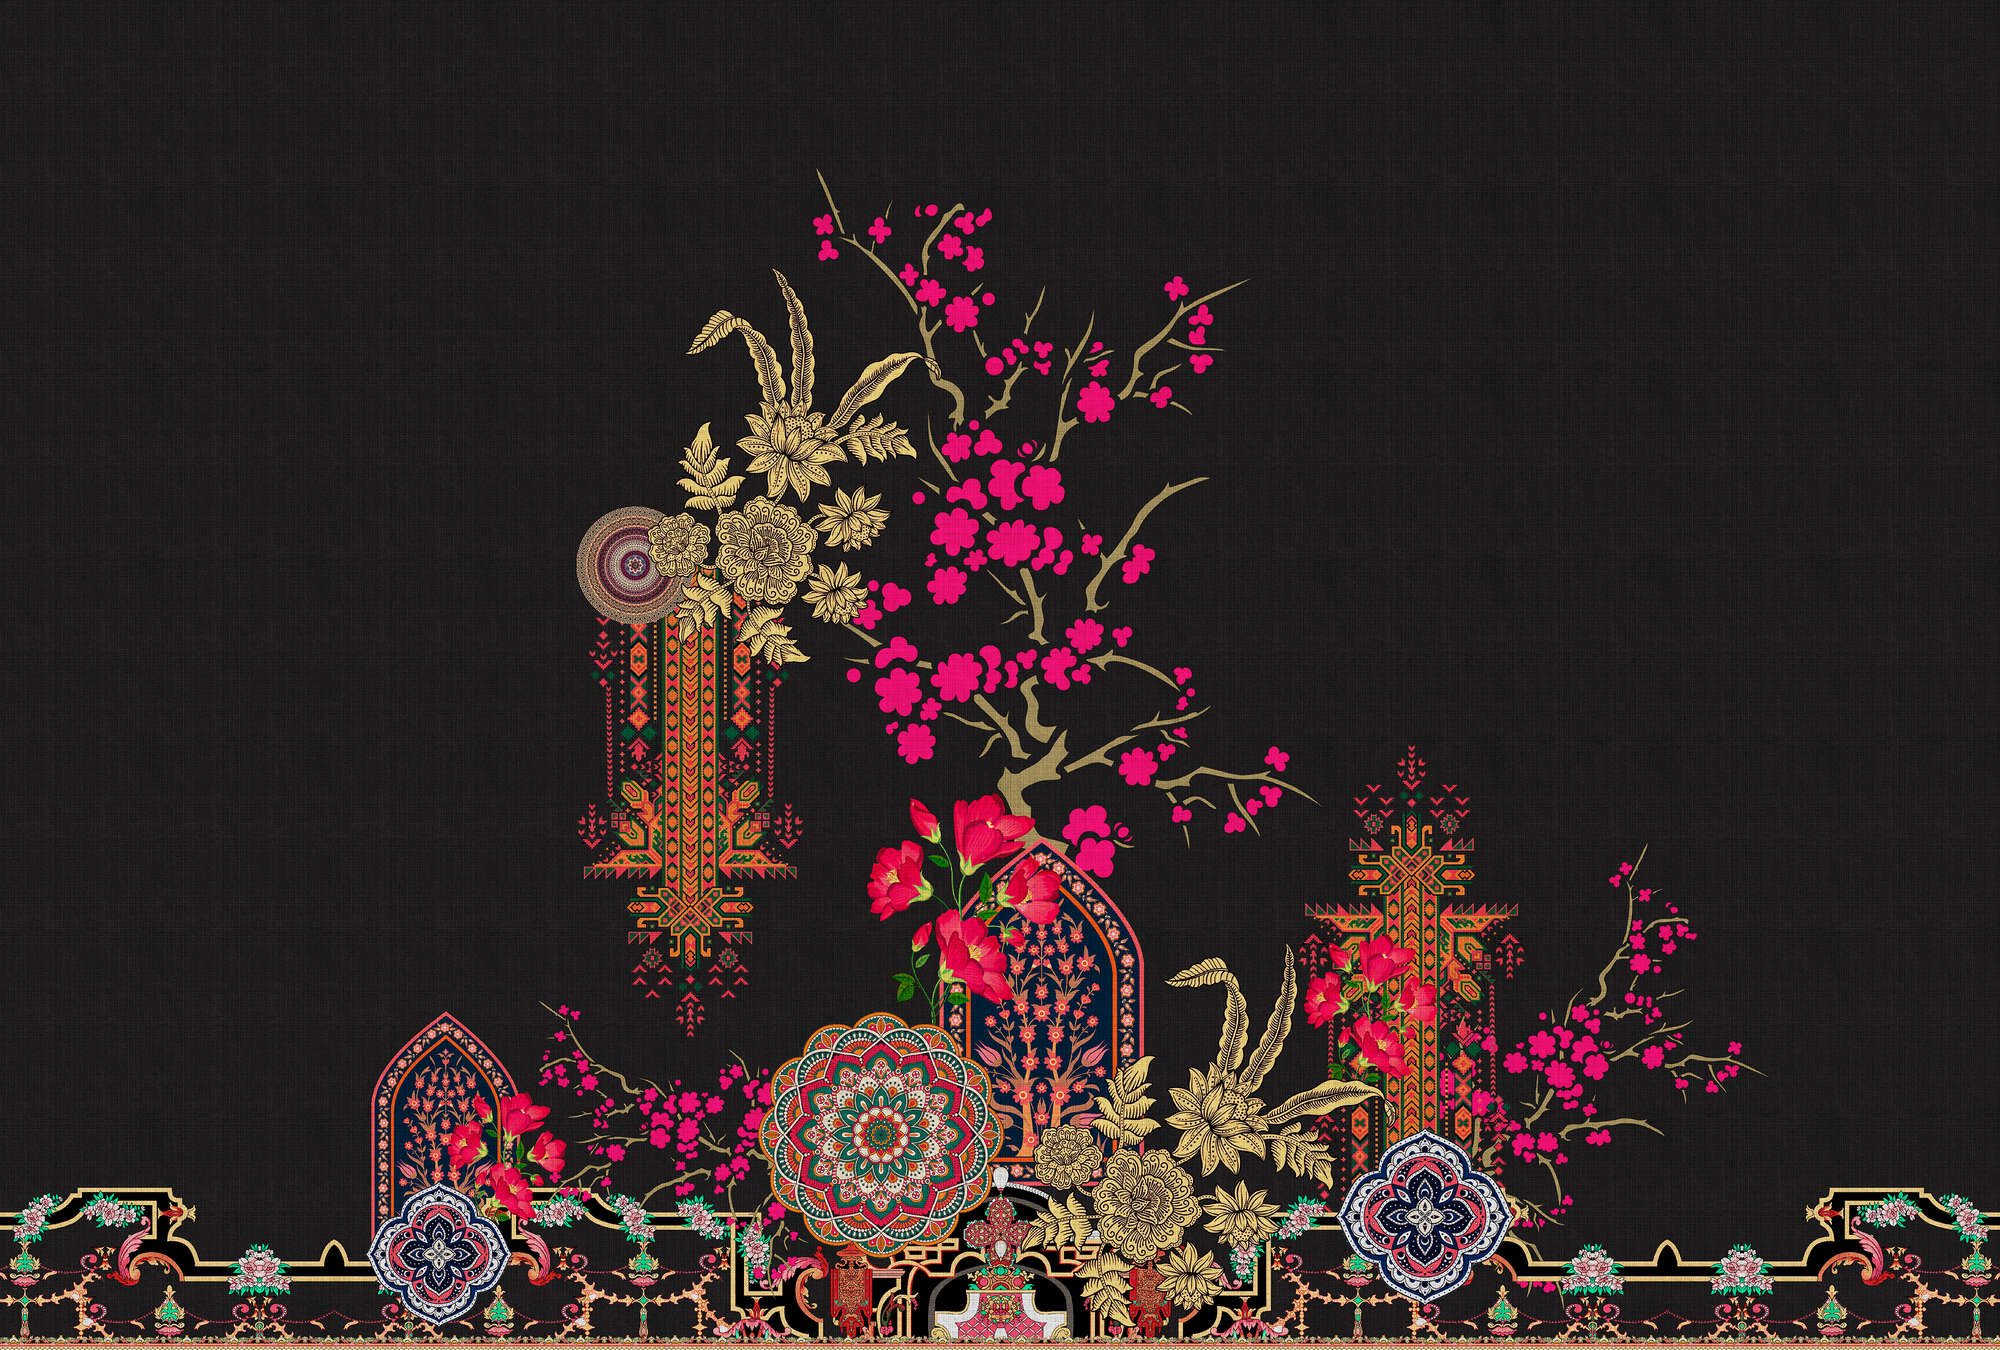             Oriental Garden 2 - mural tropical patterns & flowers
        